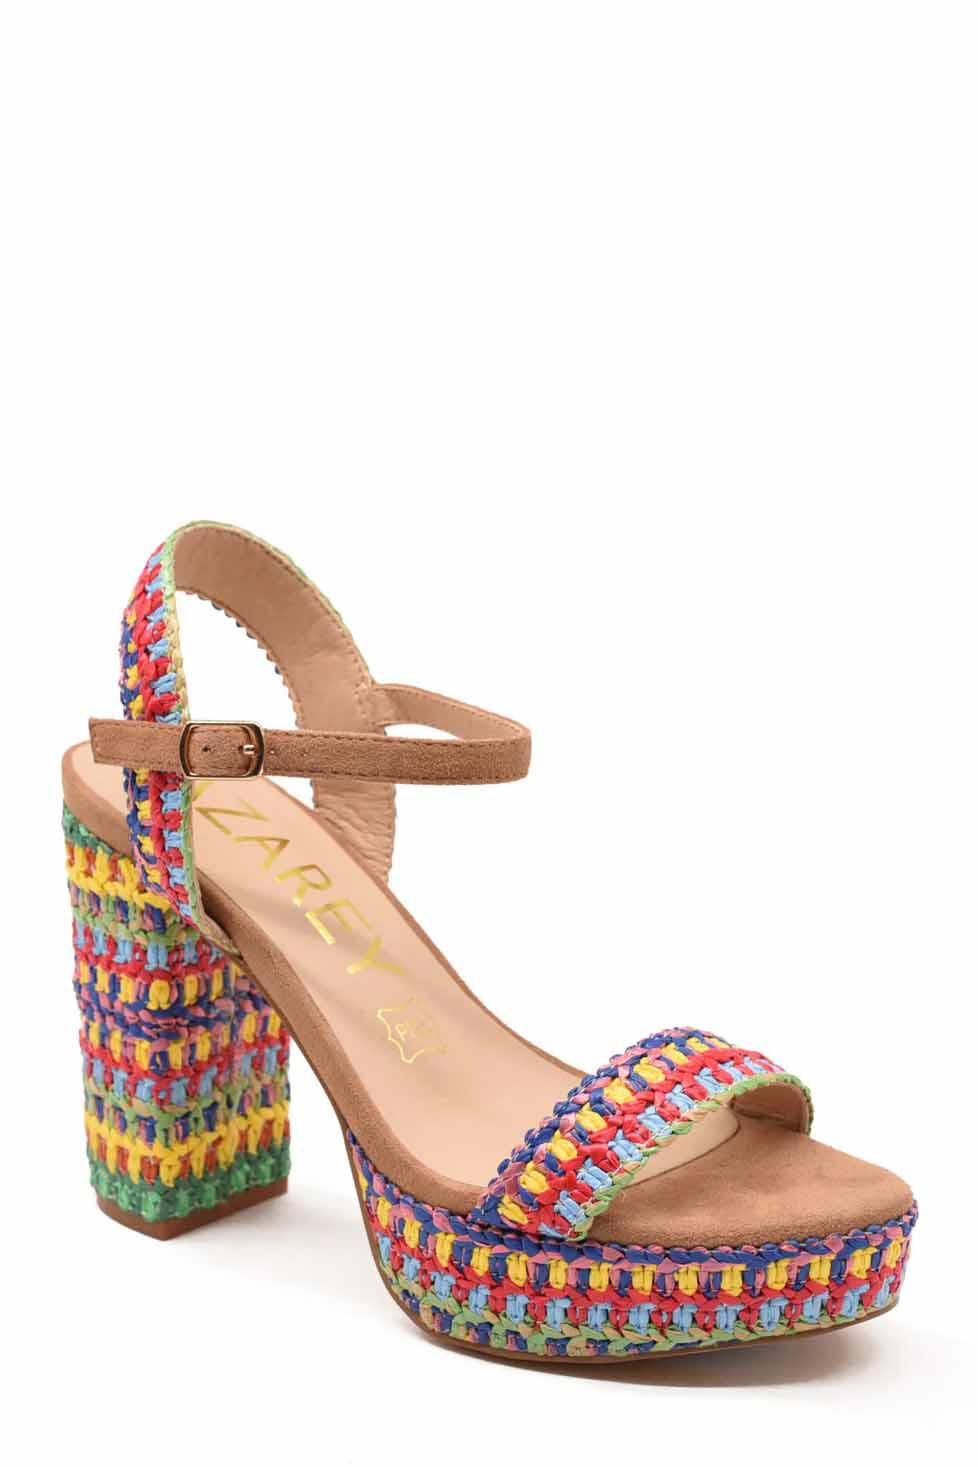 Sandalias de la marca Azarey Multicolor